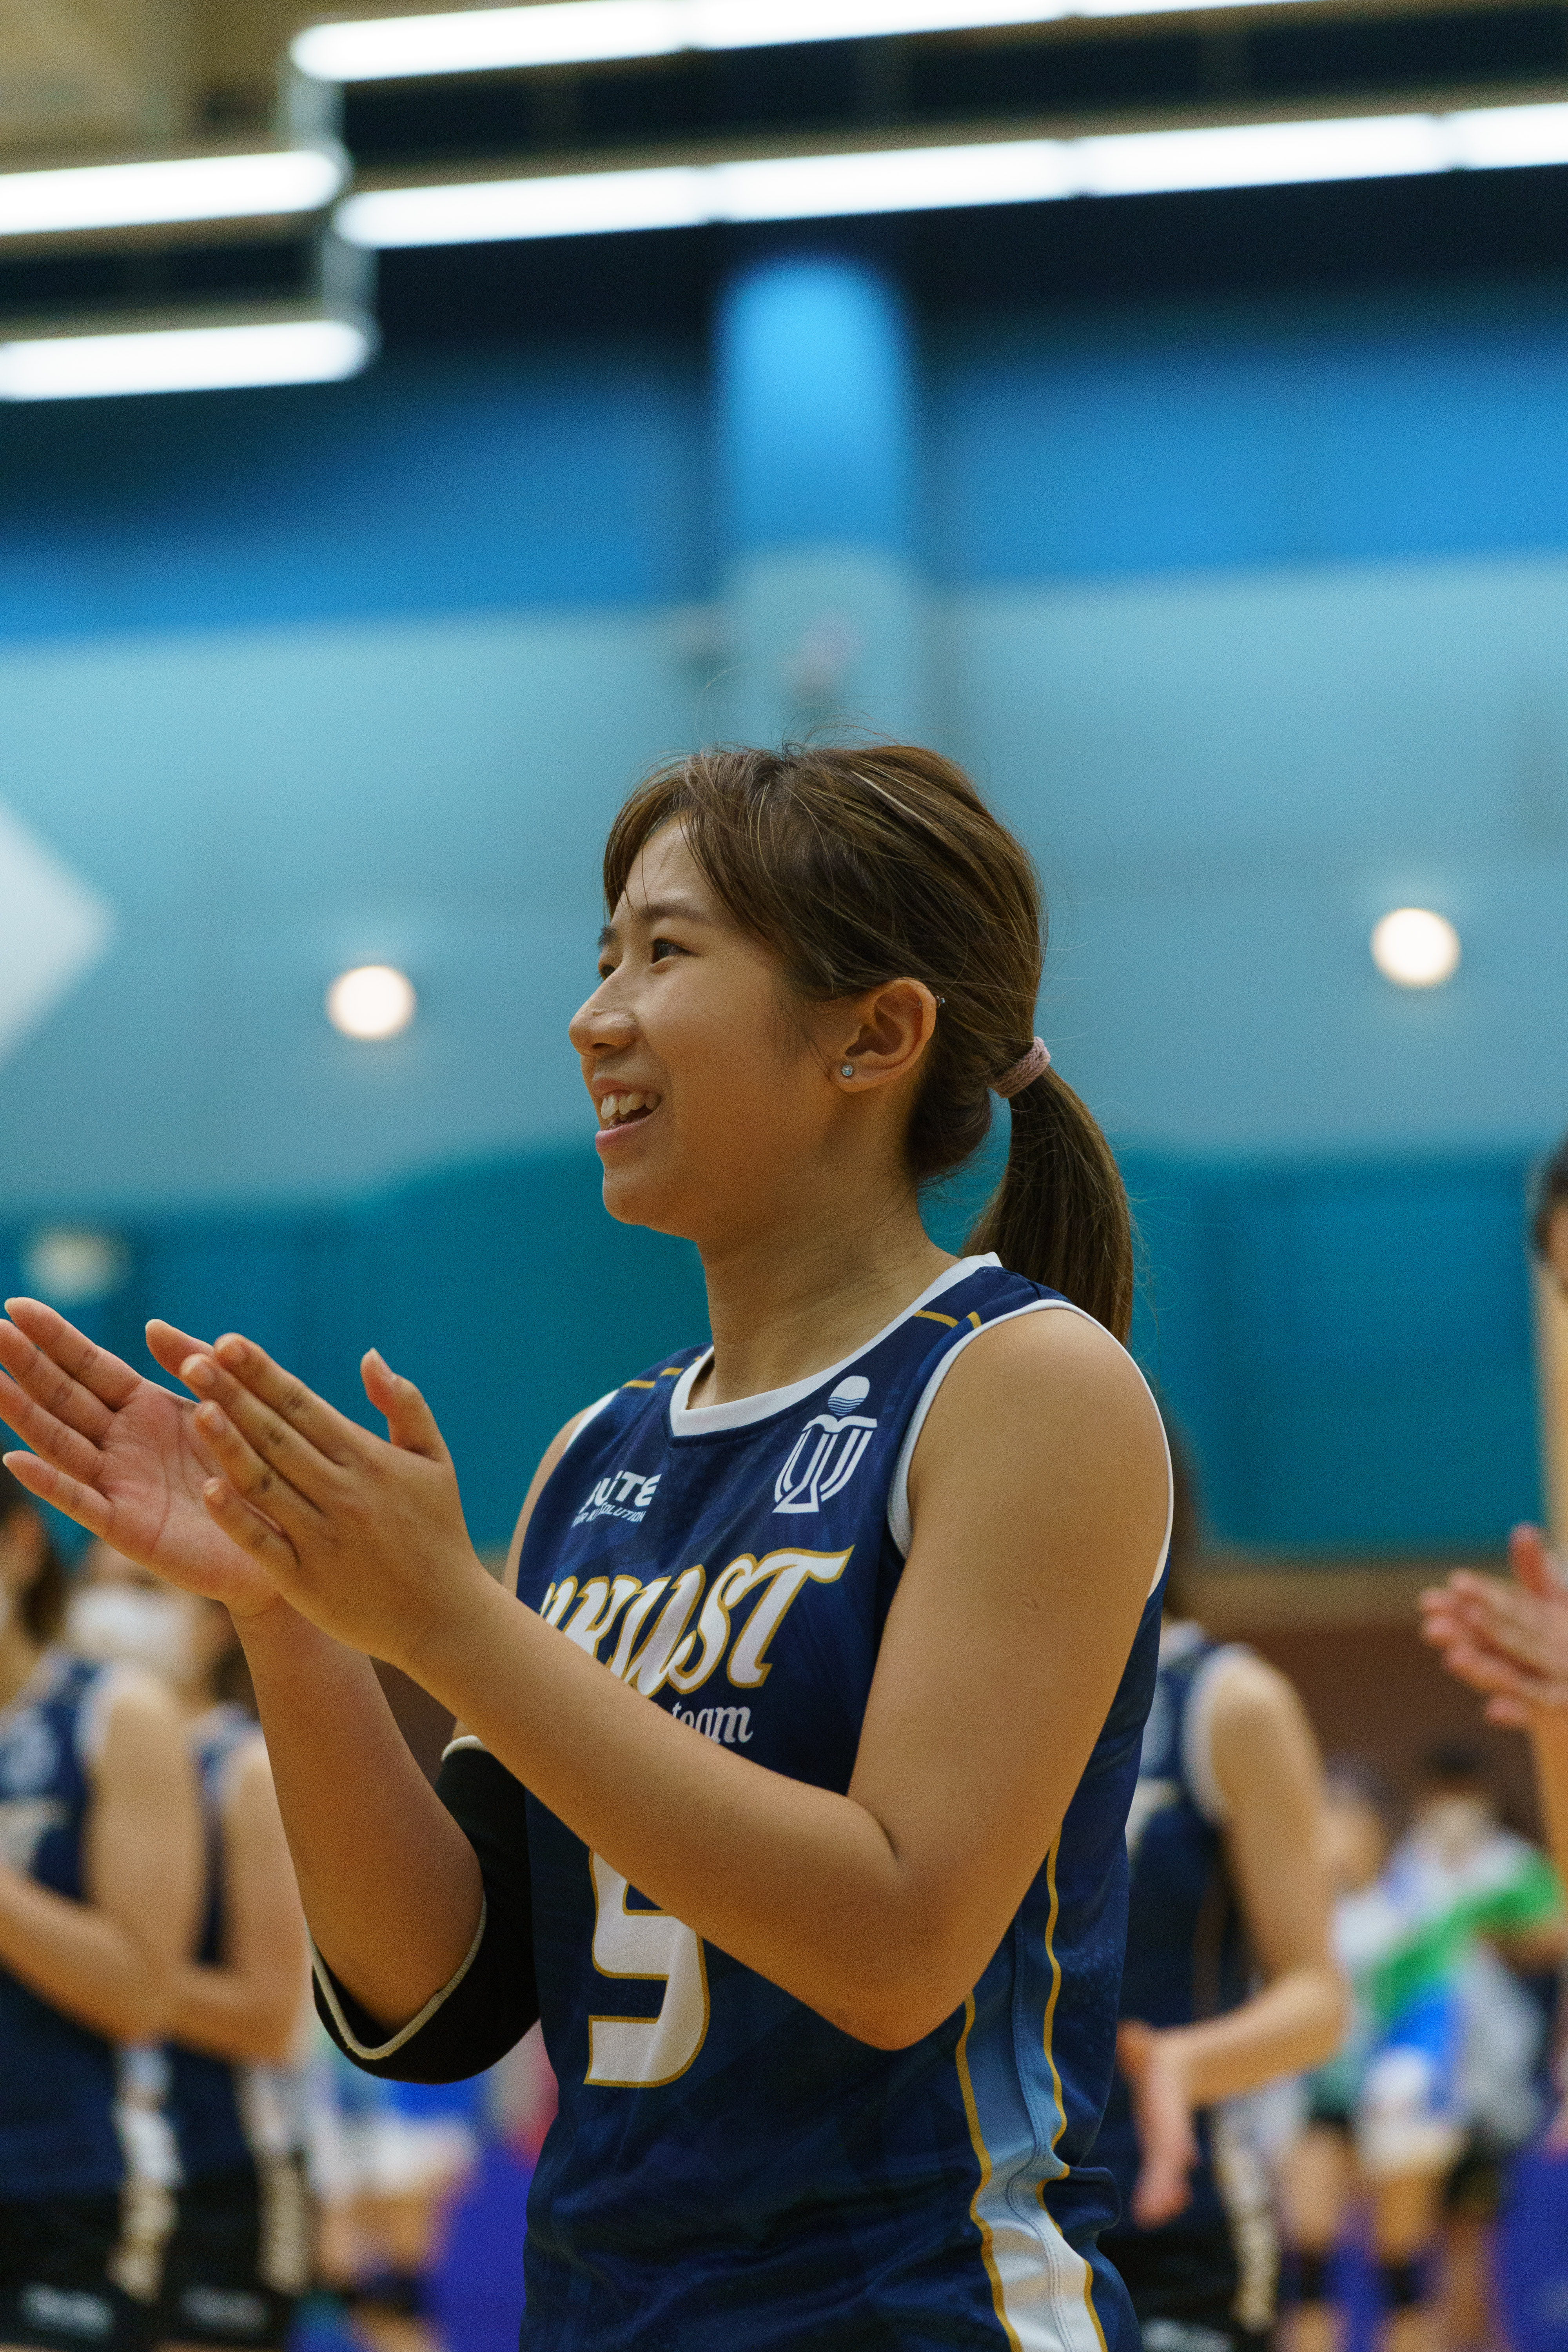 科大土木工程系毕业生彭影彤在大学时代是排球队员